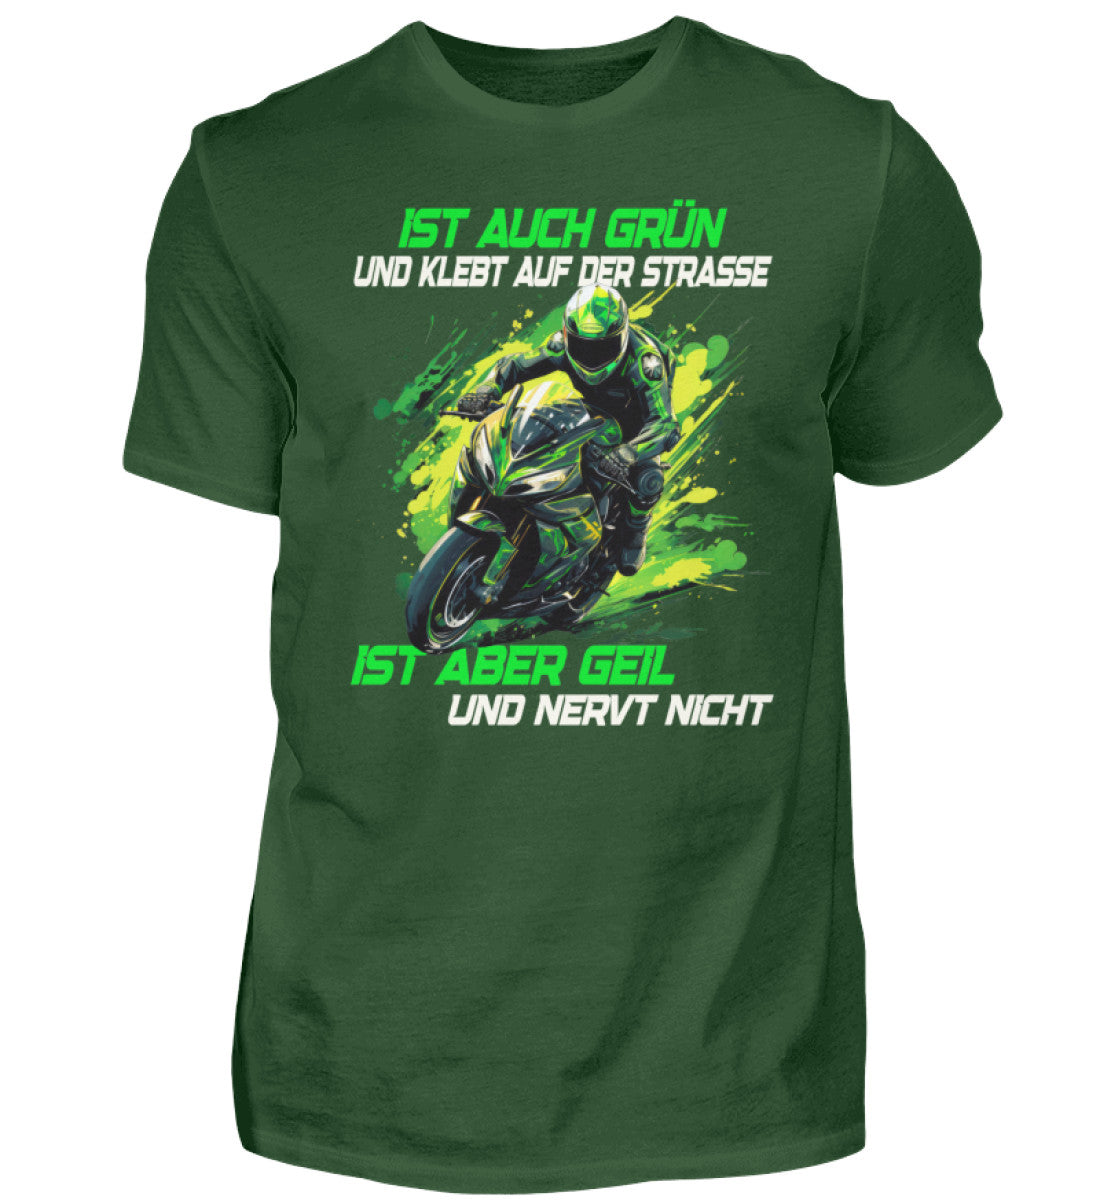 Ein T-Shirt für Motorradfahrer von Wingbikers mit dem Aufdruck, Ist auch grün und klebt auf der Straße, ist aber geil und nervt nicht, in dunkelgrün.